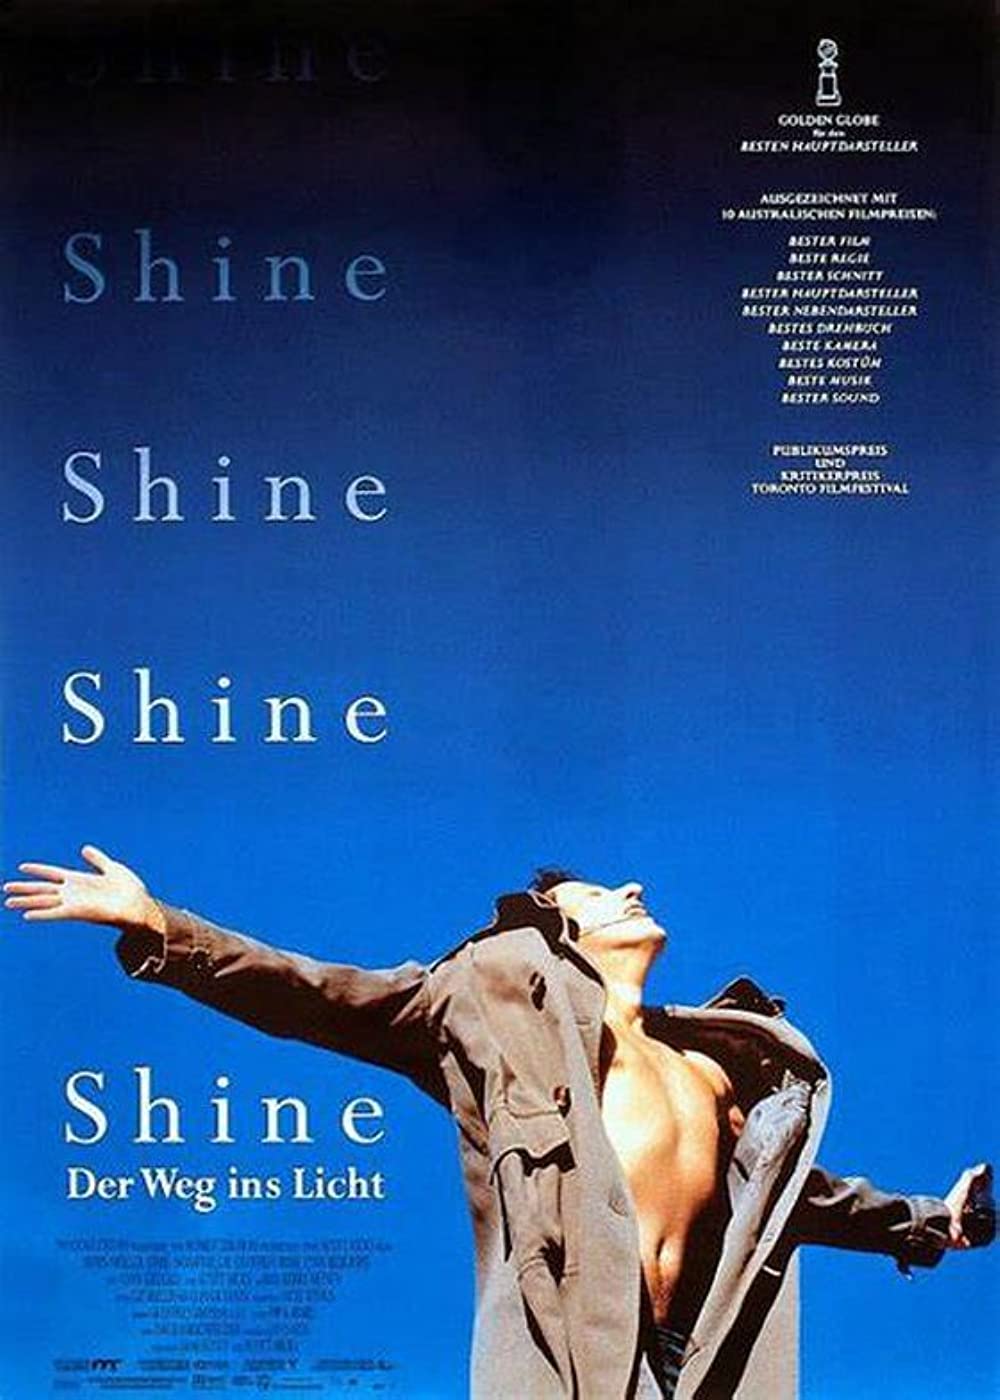 Filmbeschreibung zu Shine - Der Weg ins Licht